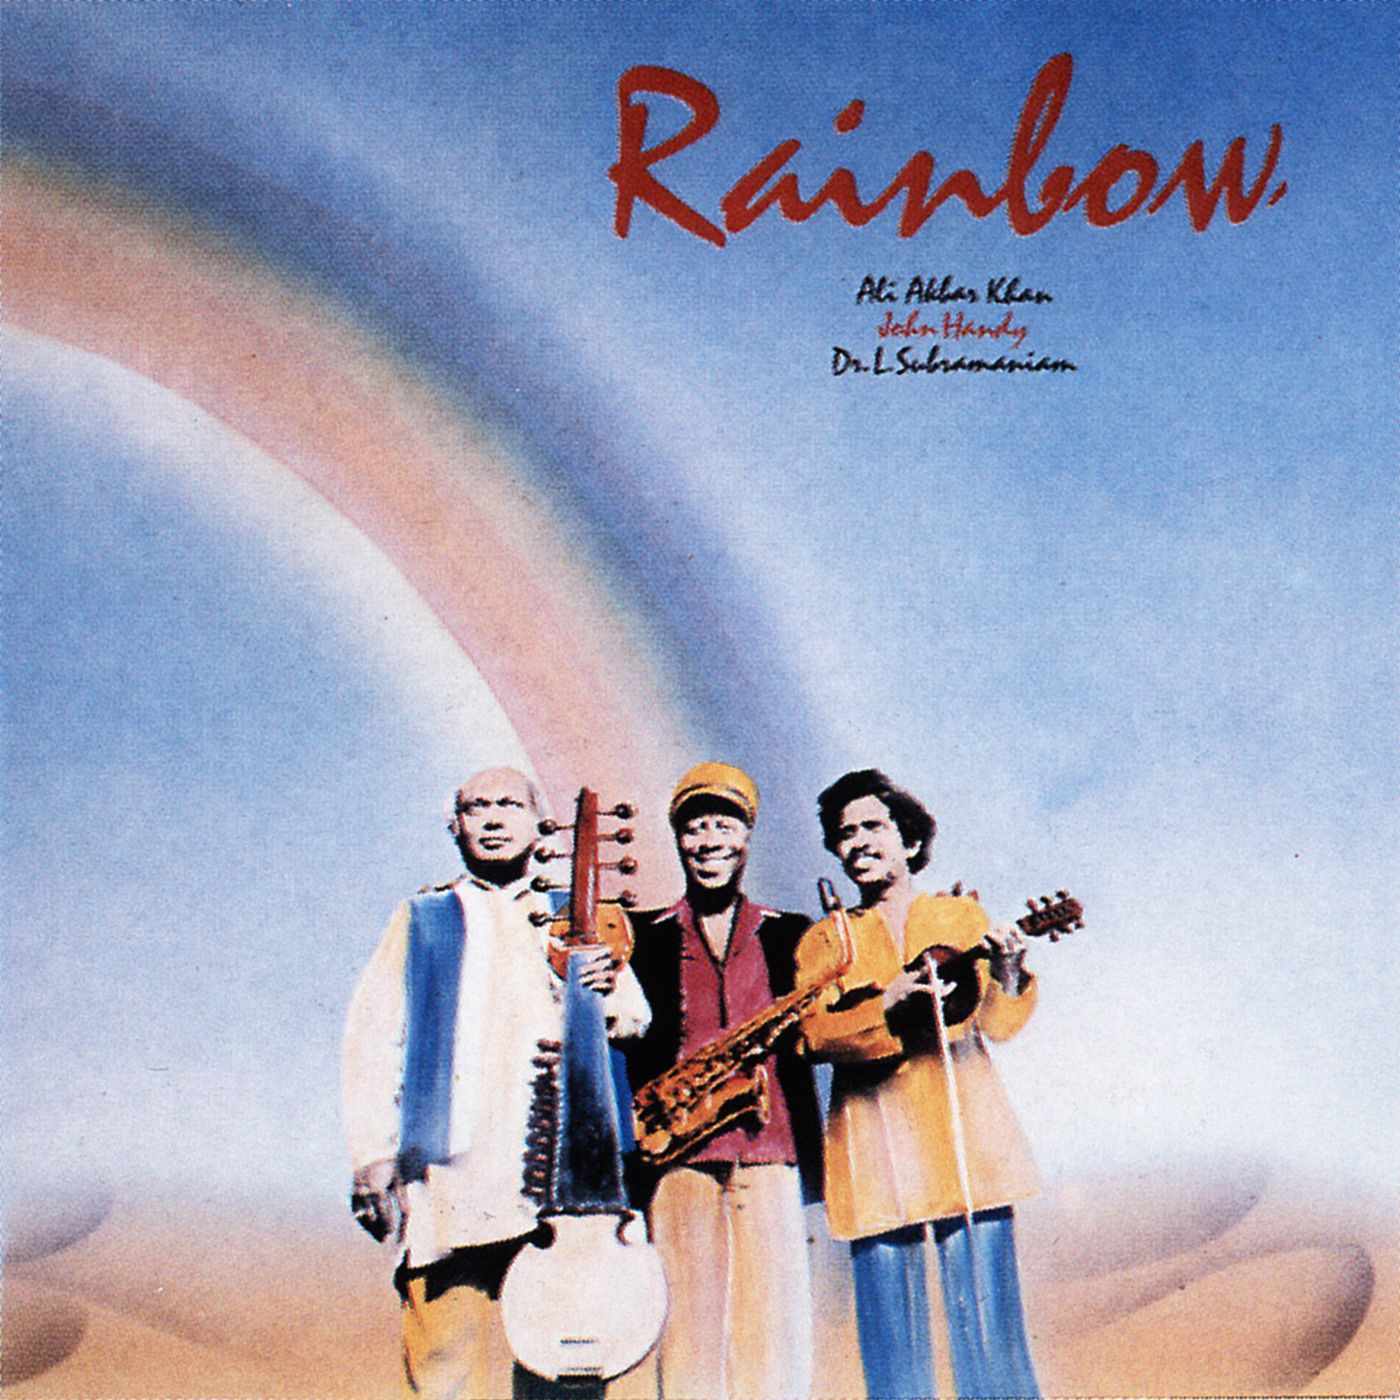 Ali Akbar Khan, John Handy - Rainbow (1981/2016) [Qobuz FLAC 24bit/88,2kHz]